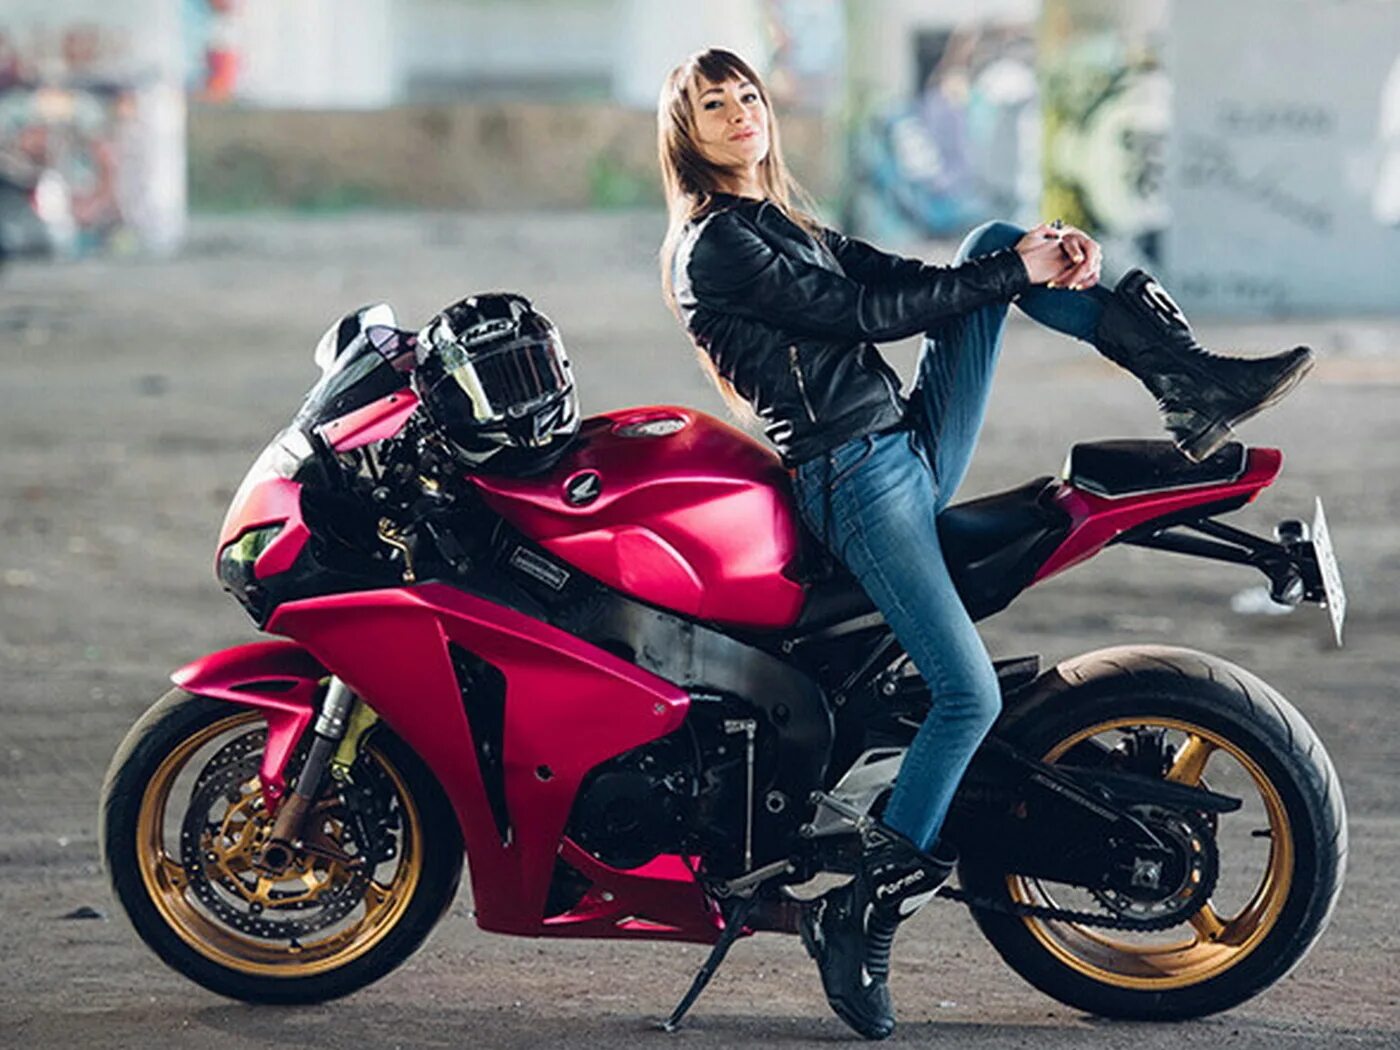 Про девушку на мотоцикле. Девушка на мотоцикле. Красивые девушки на мотоциклах. Леди на мотоцикле. Девушка на мотоцикле в шлеме.